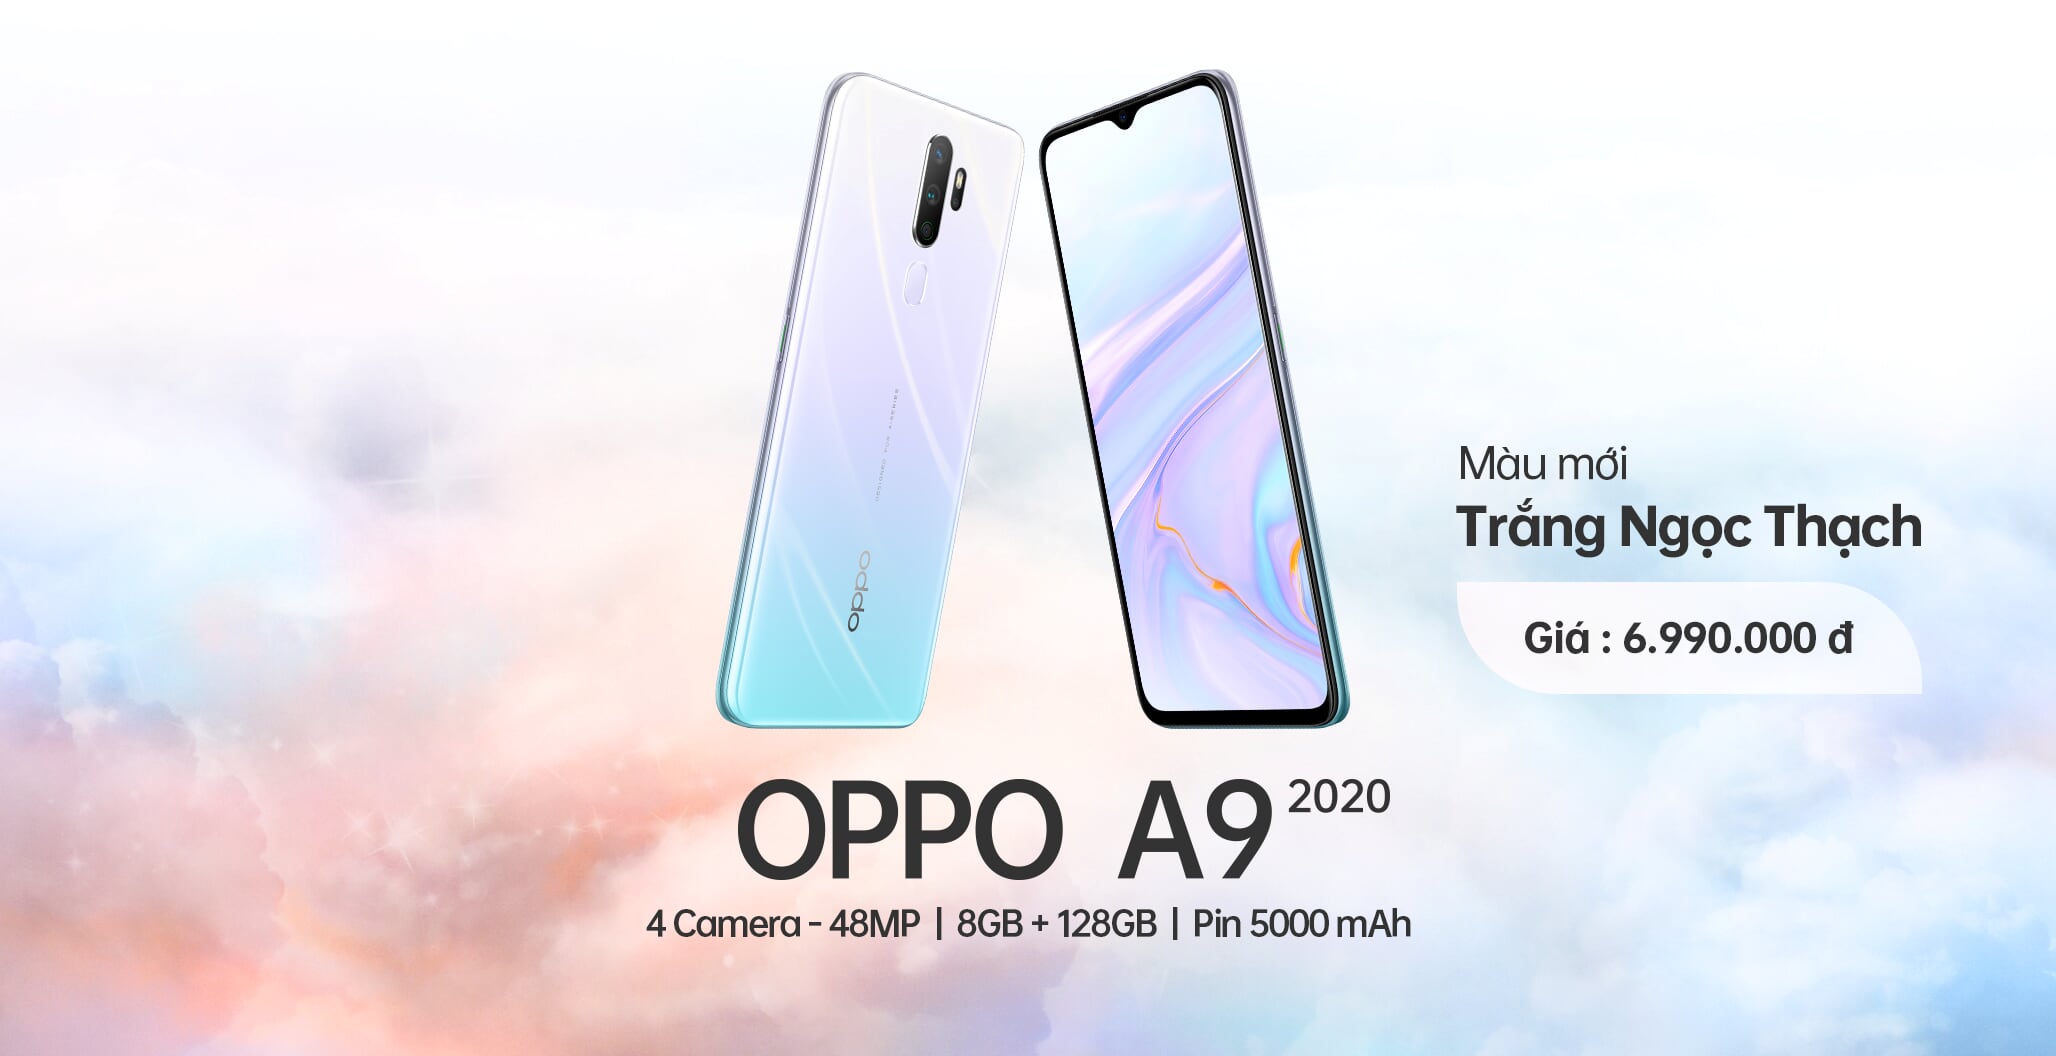 OPPO A9 2020 màu Trắng Ngọc Thạch chính thức ra mắt tại Việt Nam với nhiều ưu đãi hấp dẫn